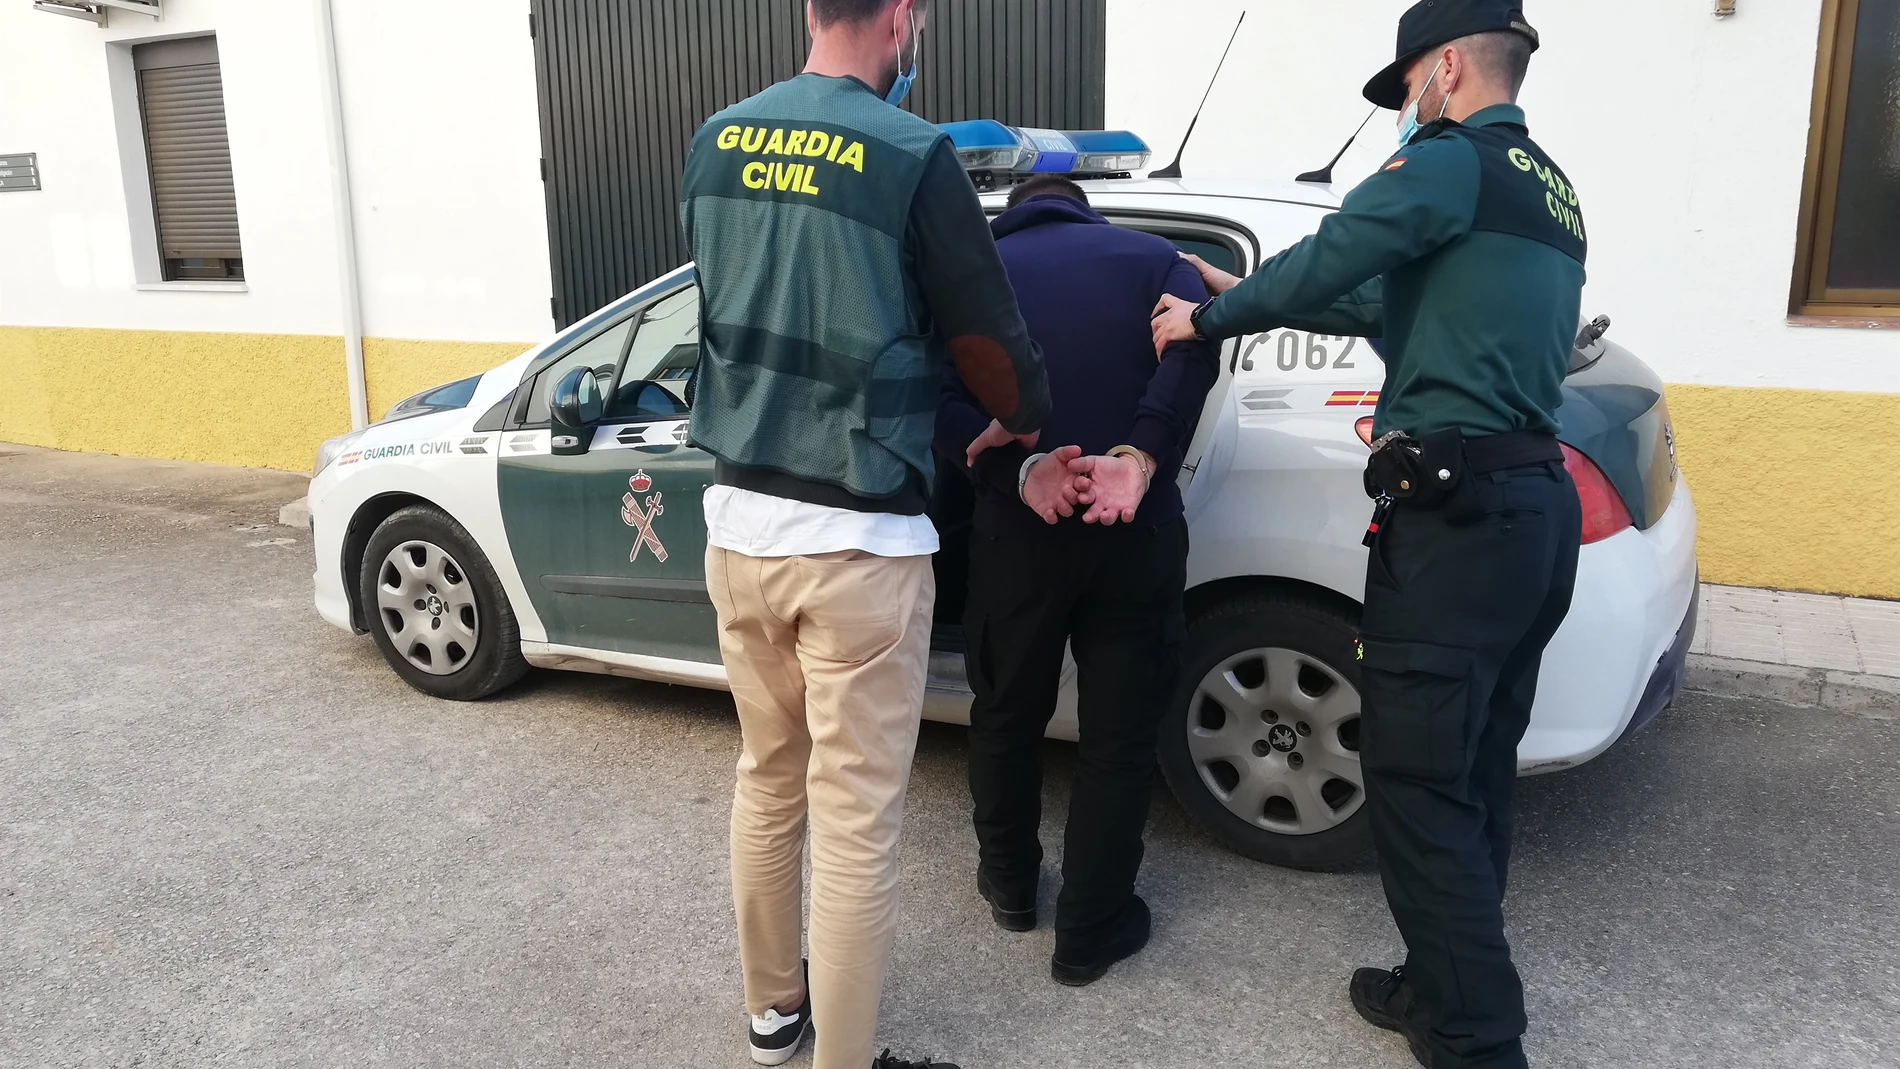 Traslado de uno de los 5 jóvenes detenidos el pasado 15 de marzo por el presunto robo en varios cortijos y viviendas aisladas de Jaén | Fuente: Guardia Civil